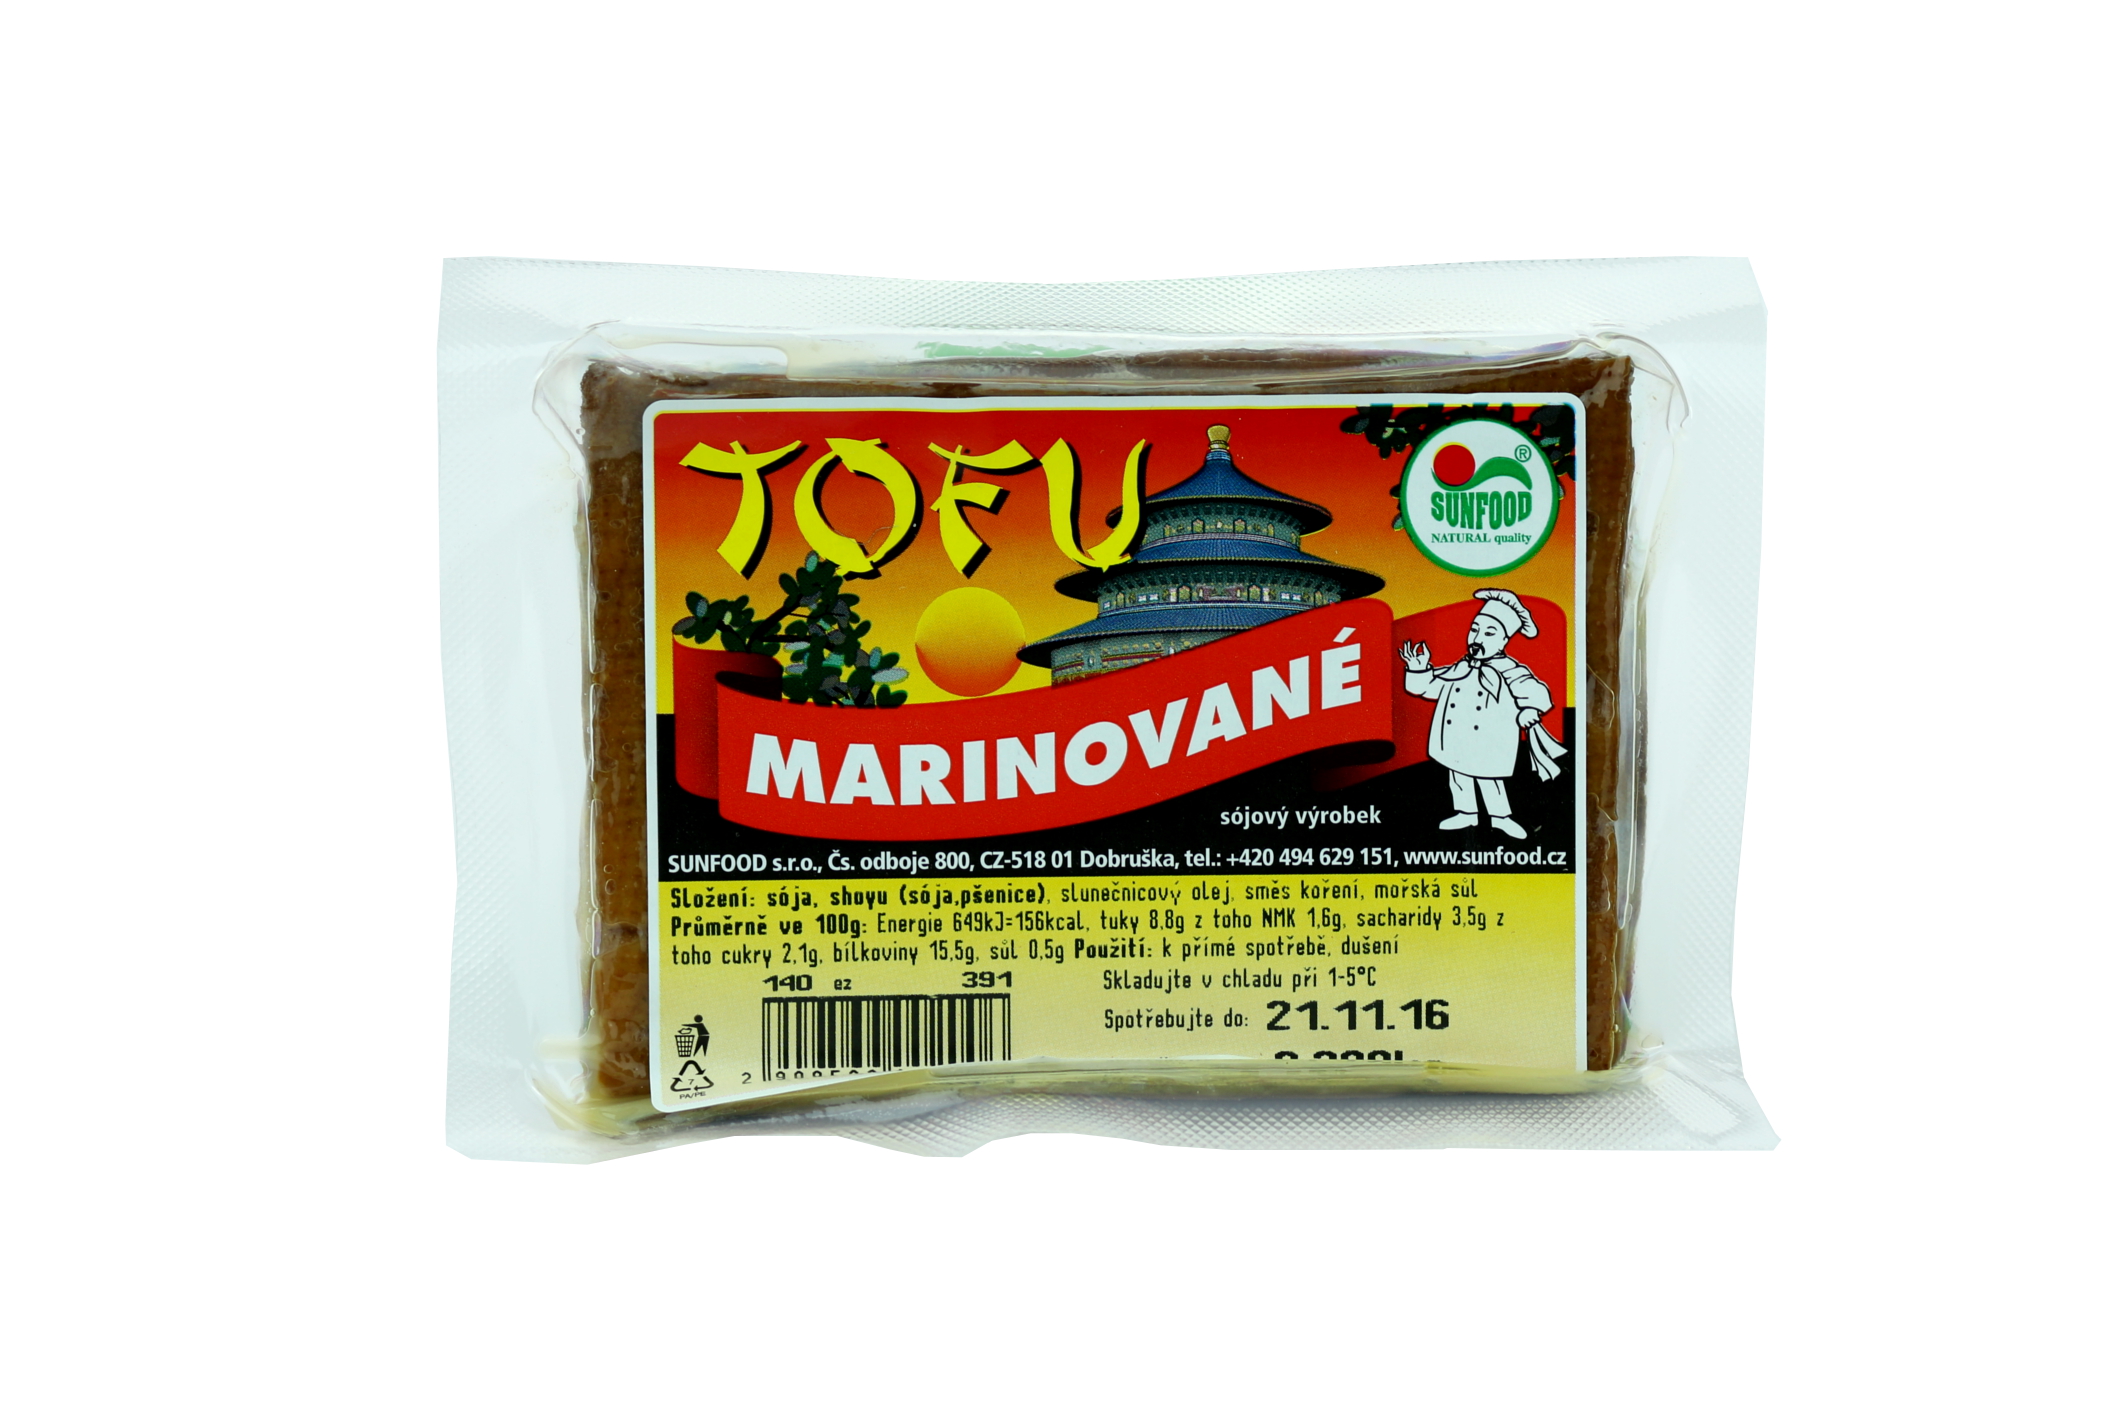 Tofu marinované 1 Kg - pouze rozvoz vybraná města nebo osobní odběr